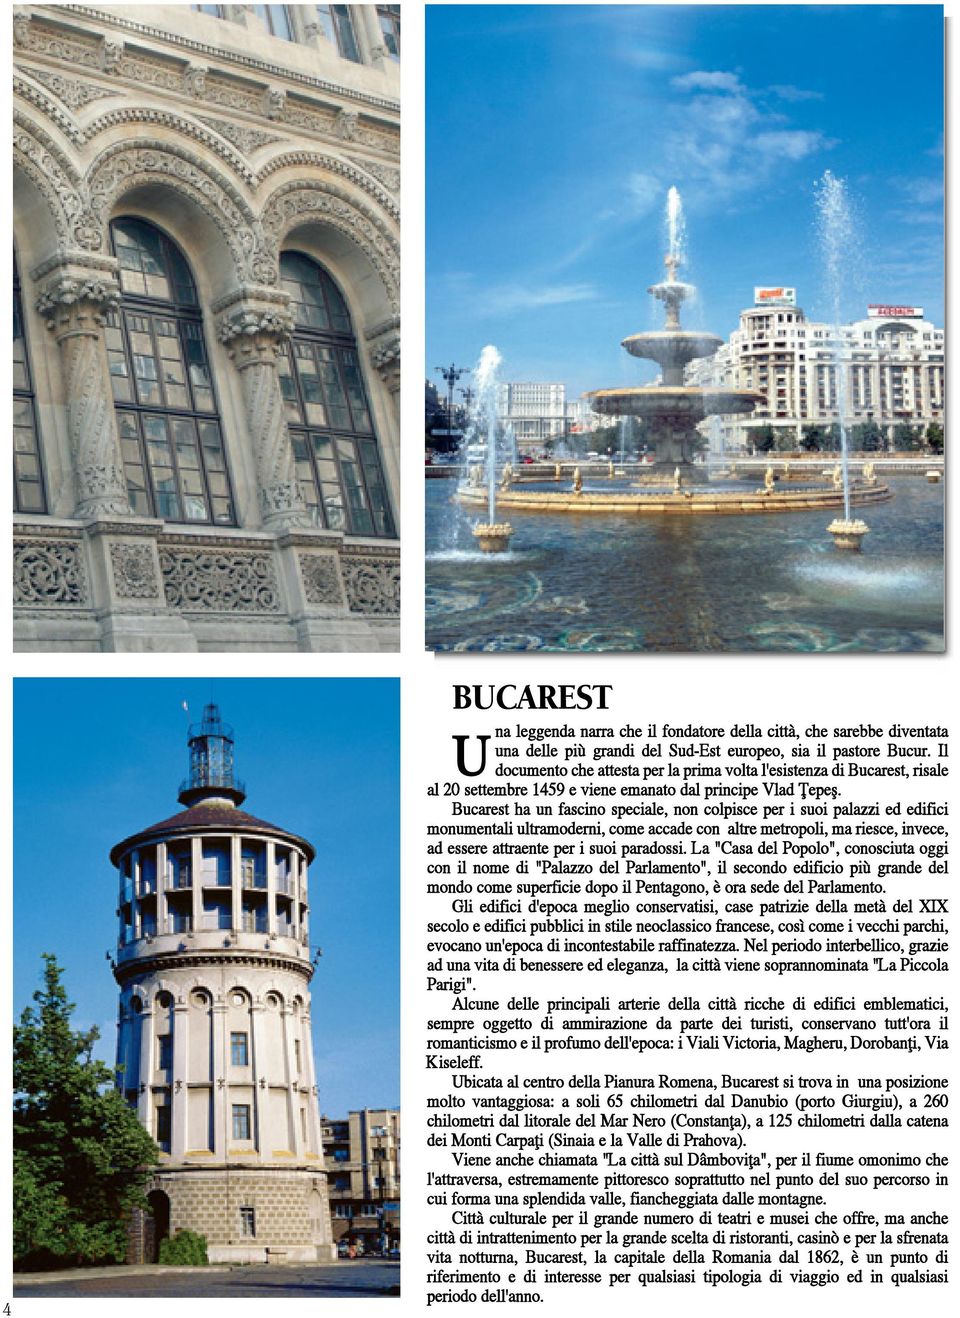 Bucarest ha un fascino speciale, non colpisce per i suoi palazzi ed edifici monumentali ultramoderni, come accade con altre metropoli, ma riesce, invece, ad essere attraente per i suoi paradossi.